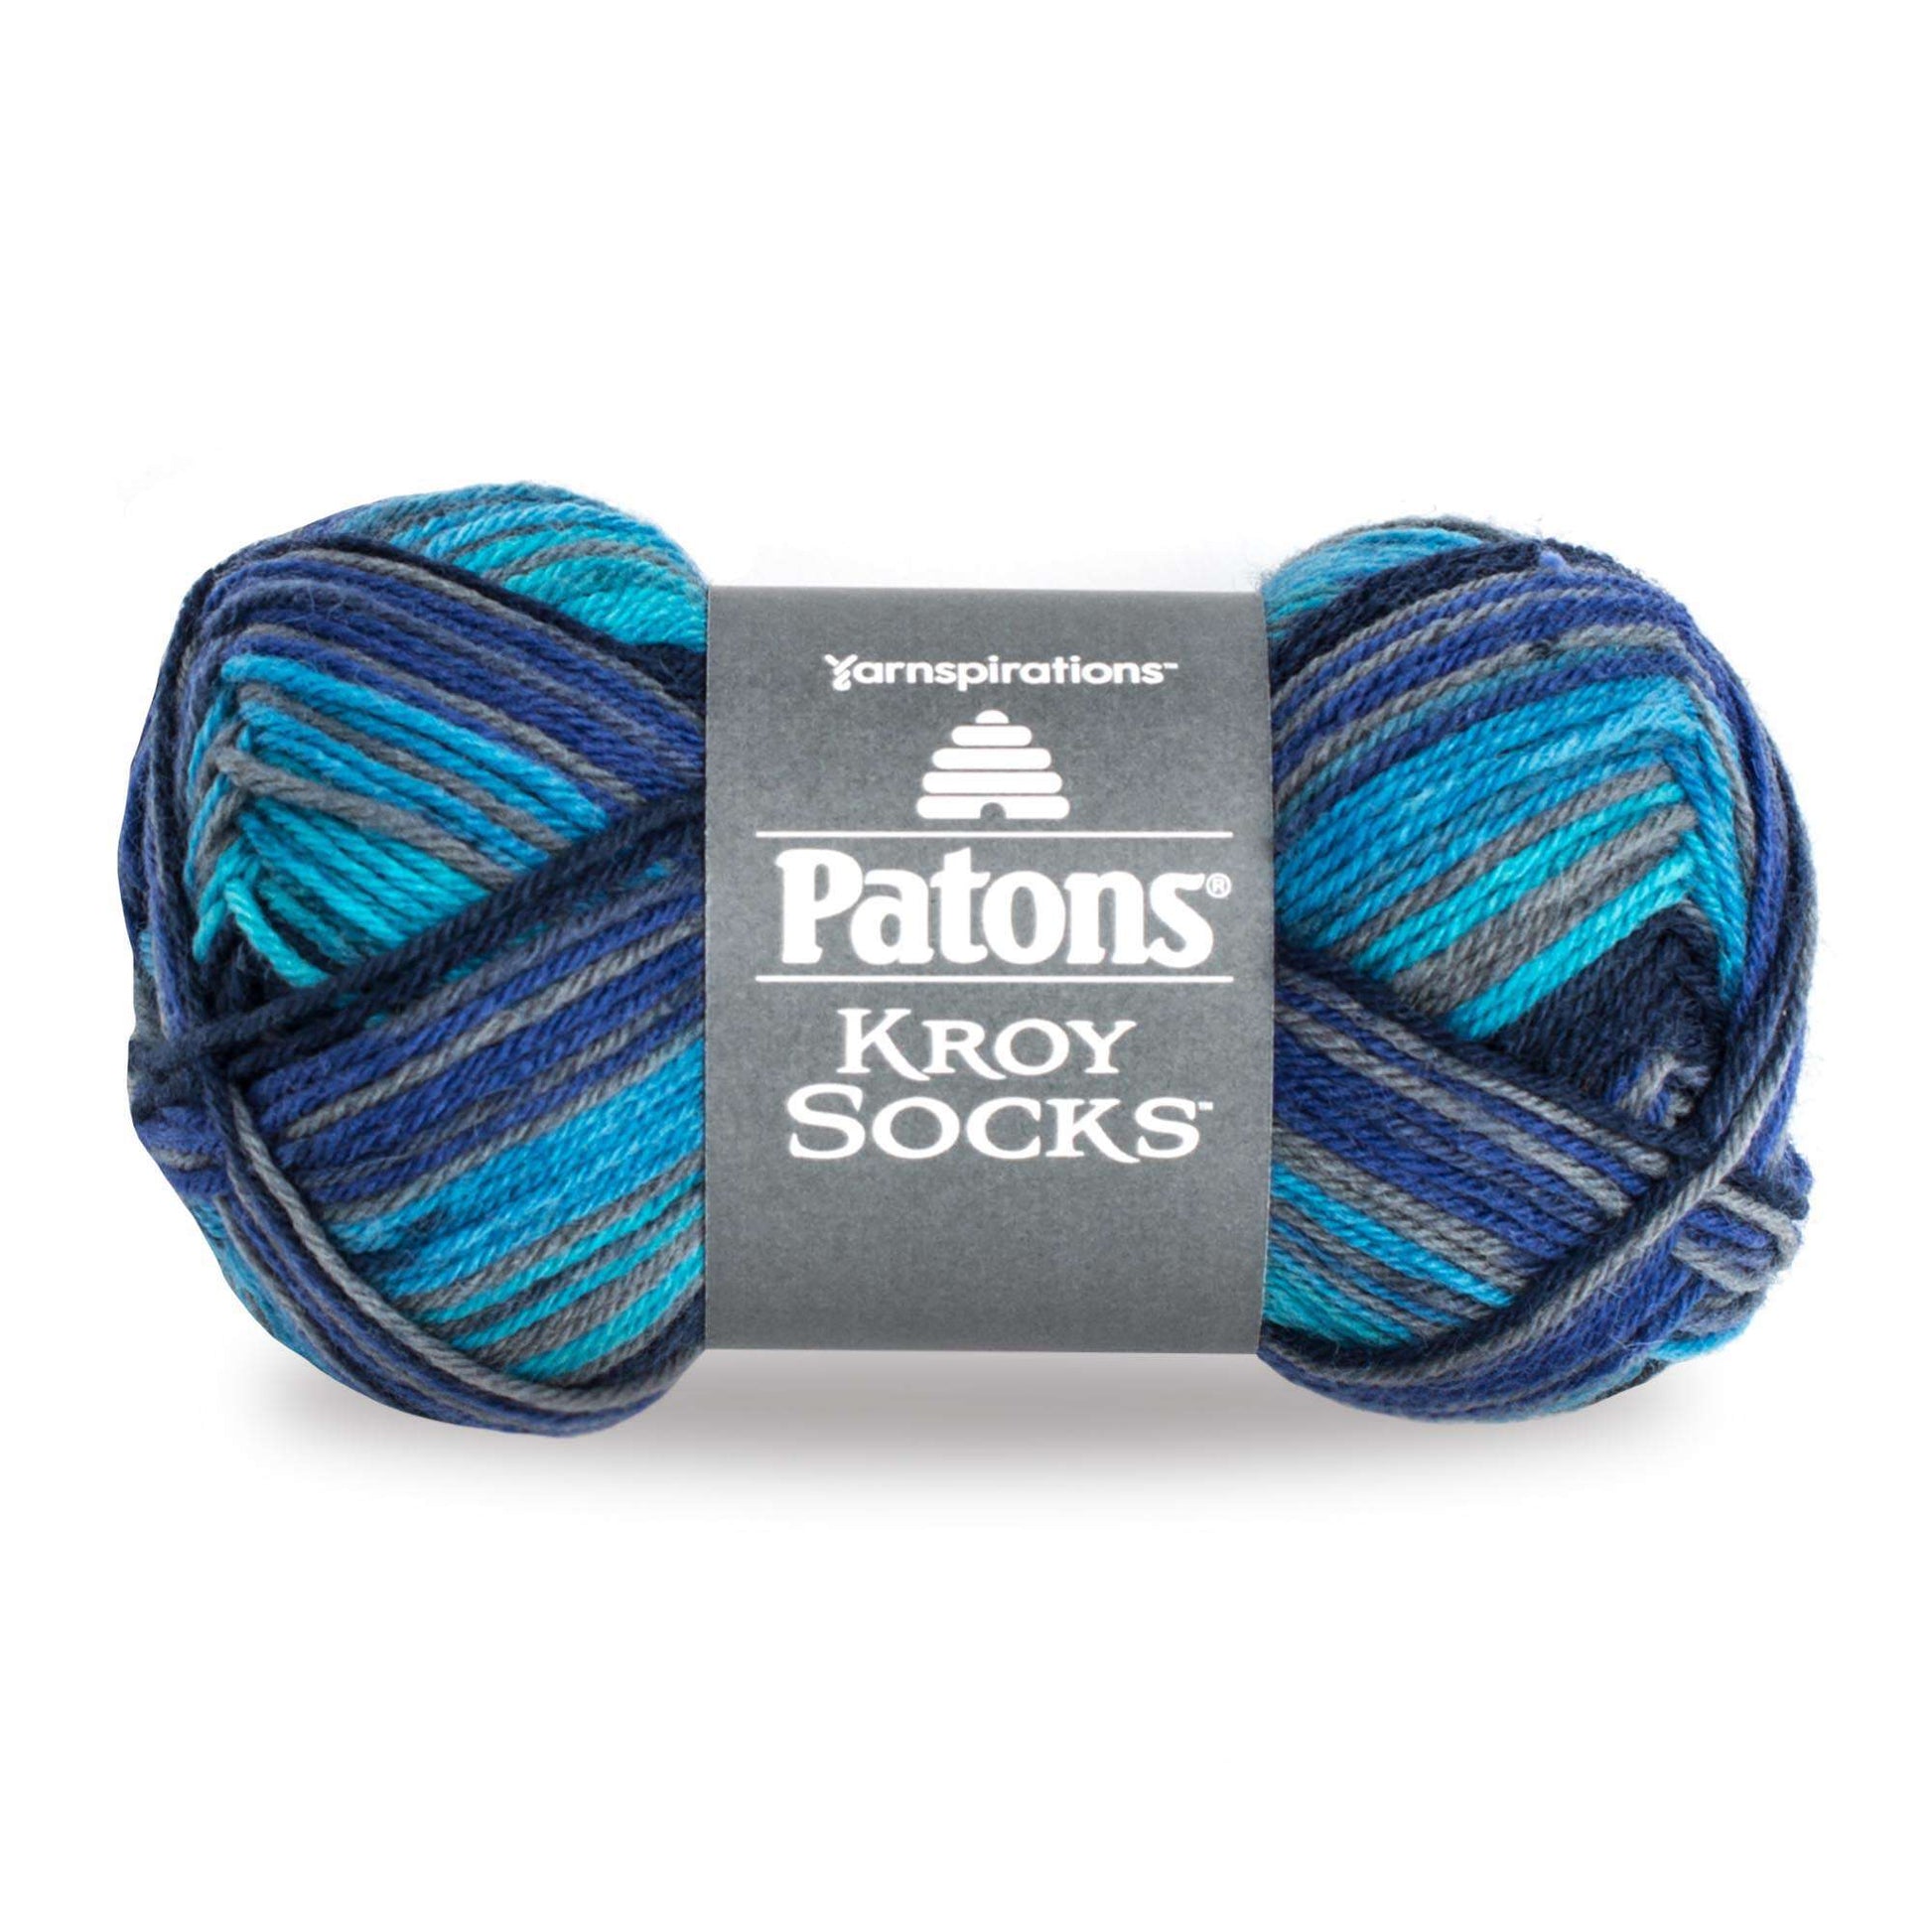 Patons Kroy Socks Yarn - Discontinued Shades